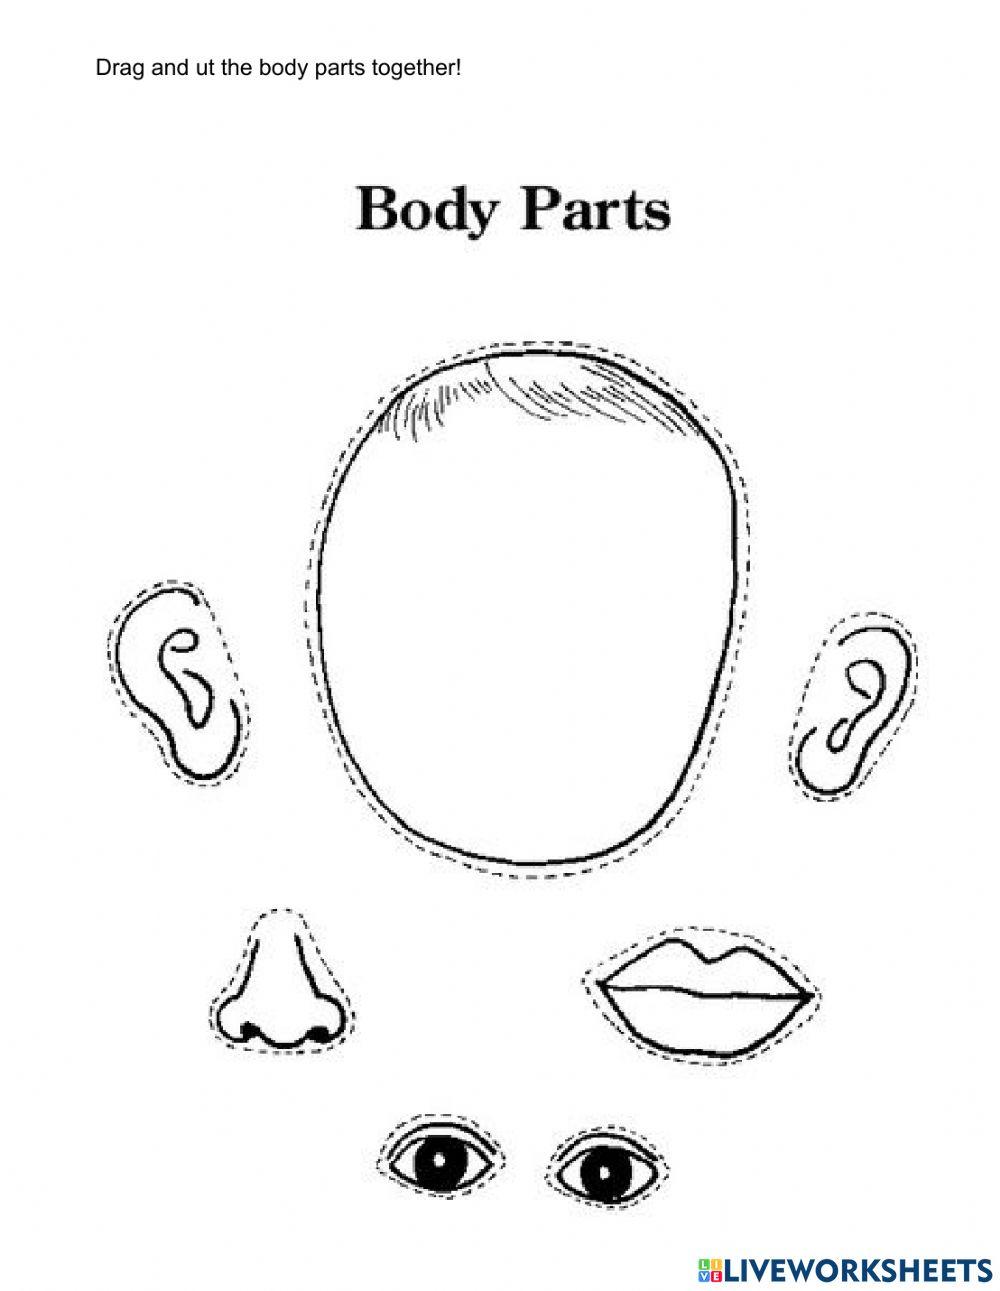 Face parts